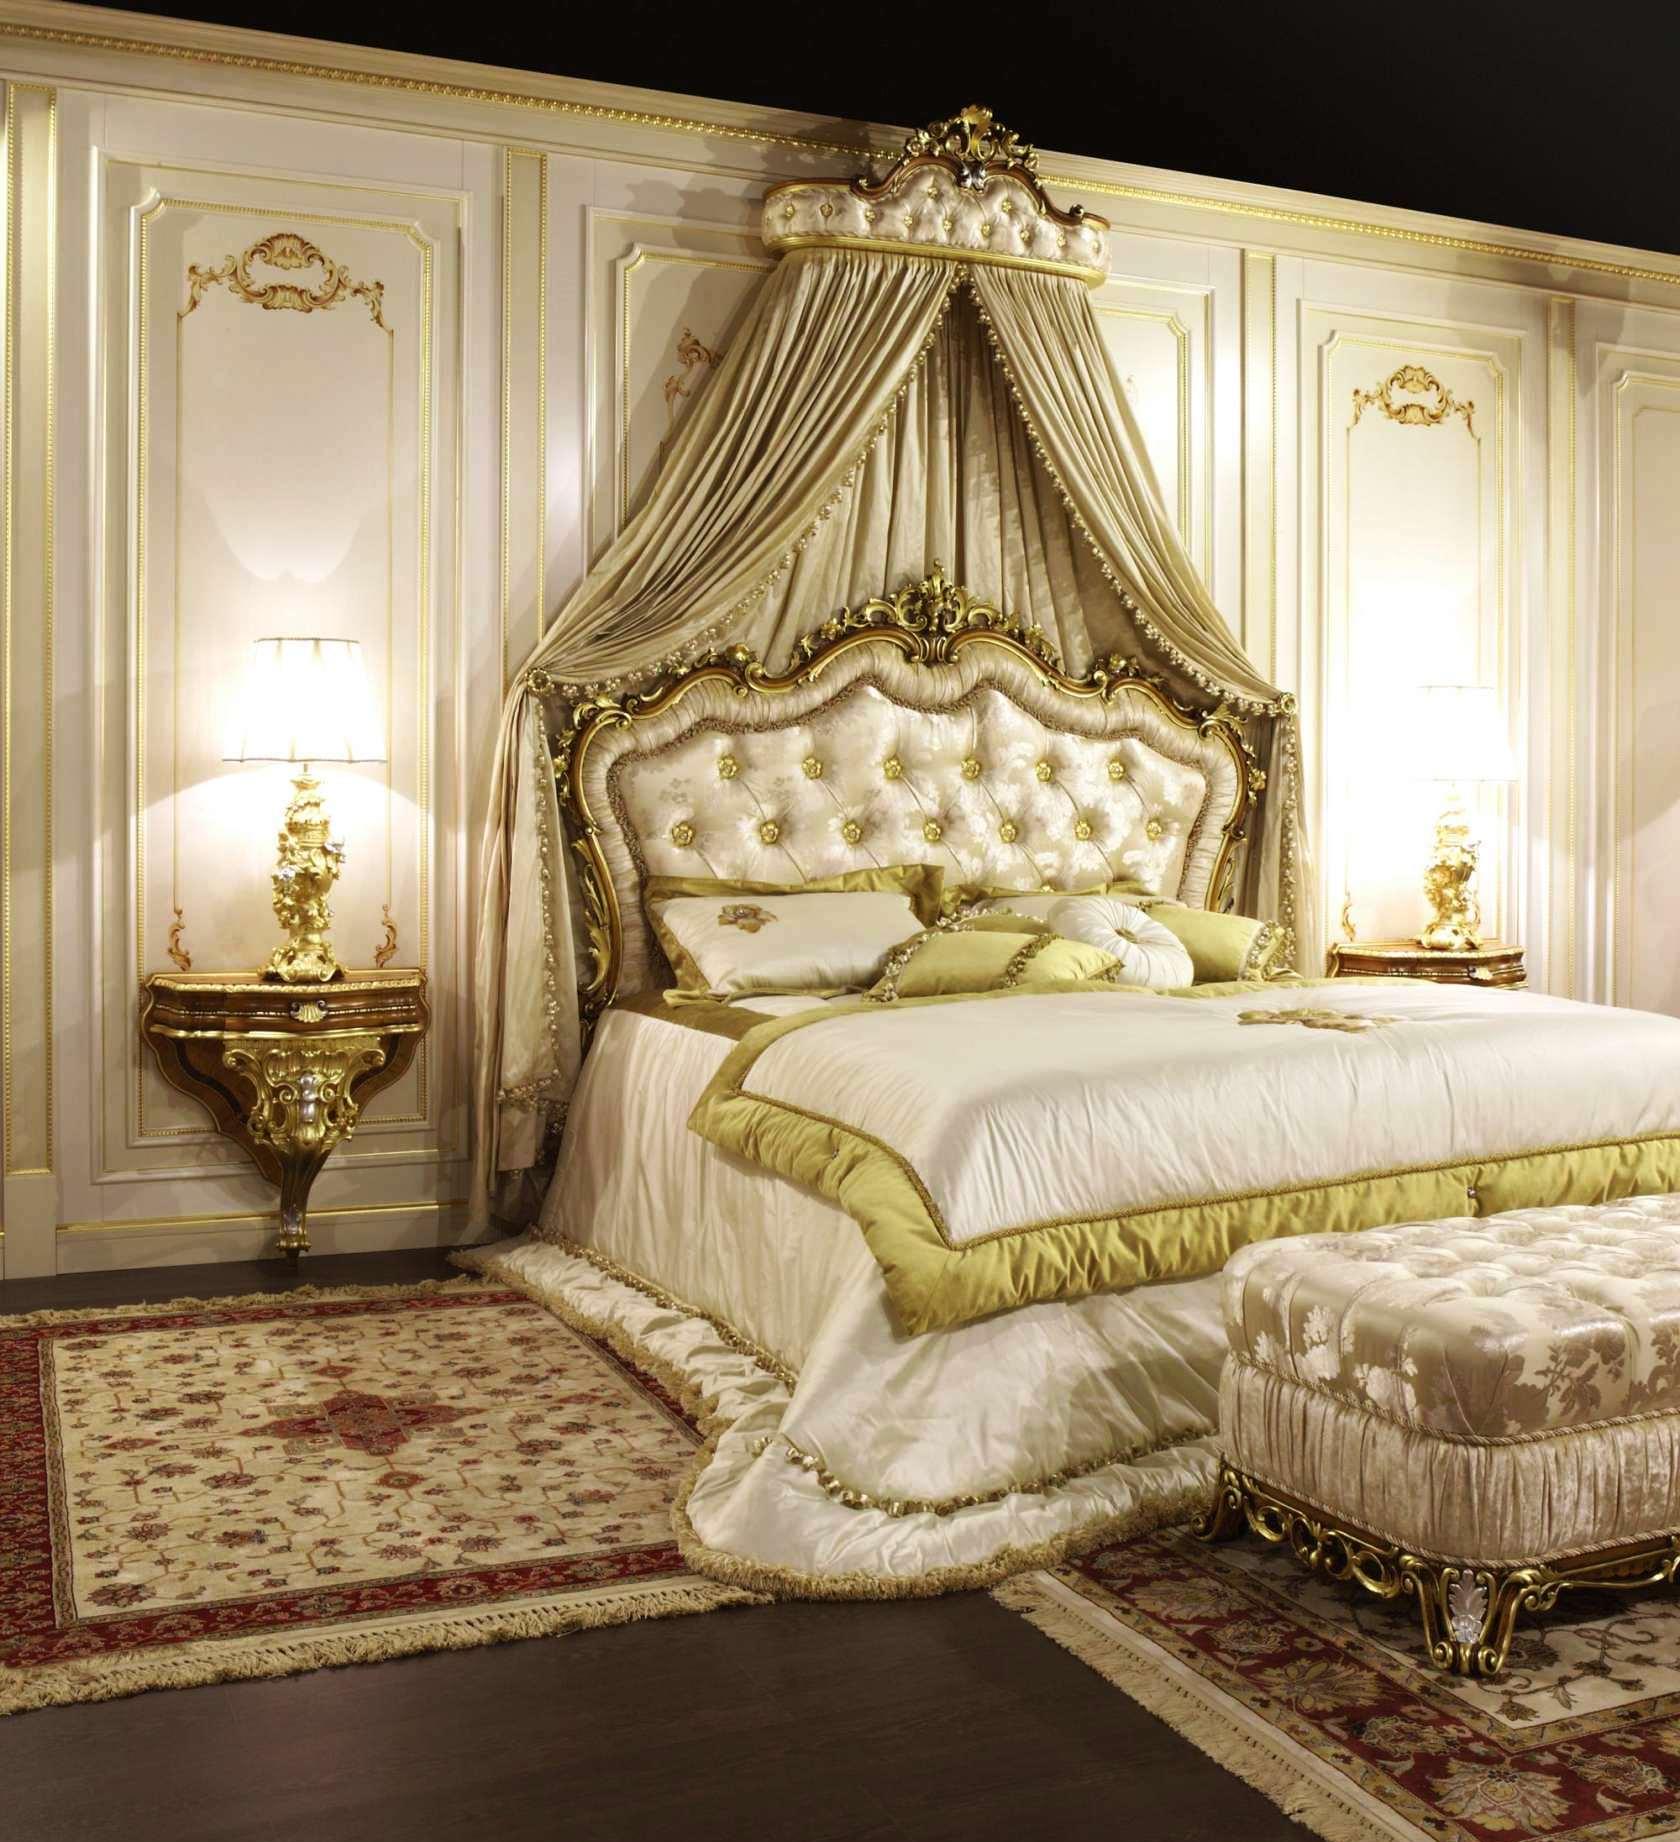 Роскошный золотистый балдахин над кроватью